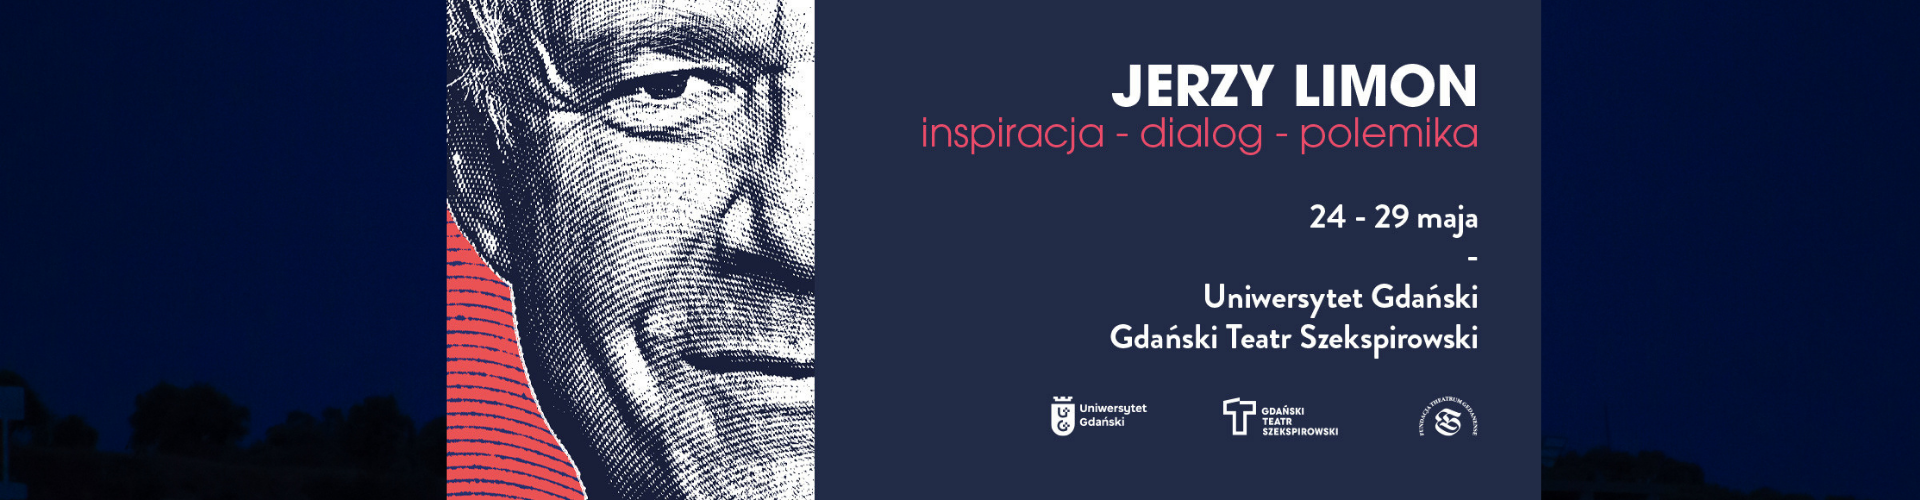 Jerzy Limon: inspiracja – dialog – polemika